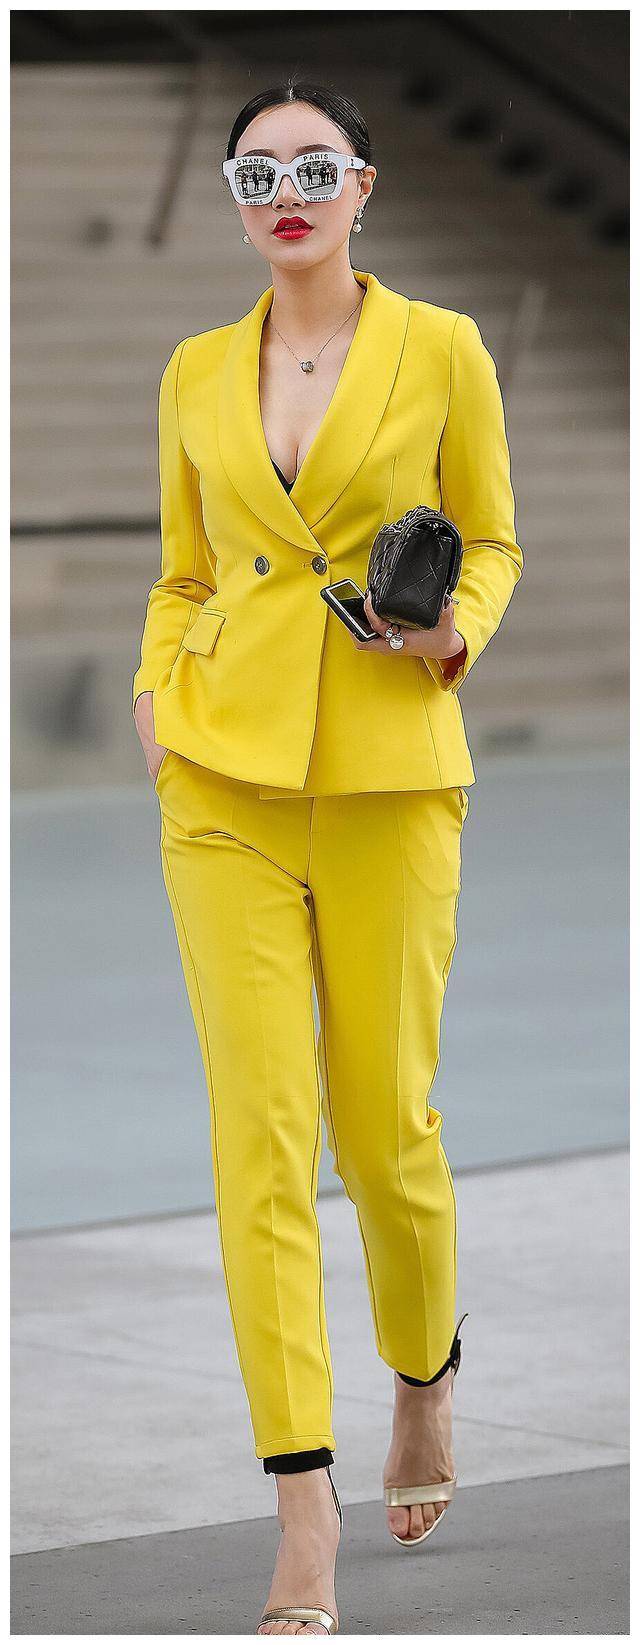 原创             美女居然穿的这么黄？一般人可驾驭不了啊